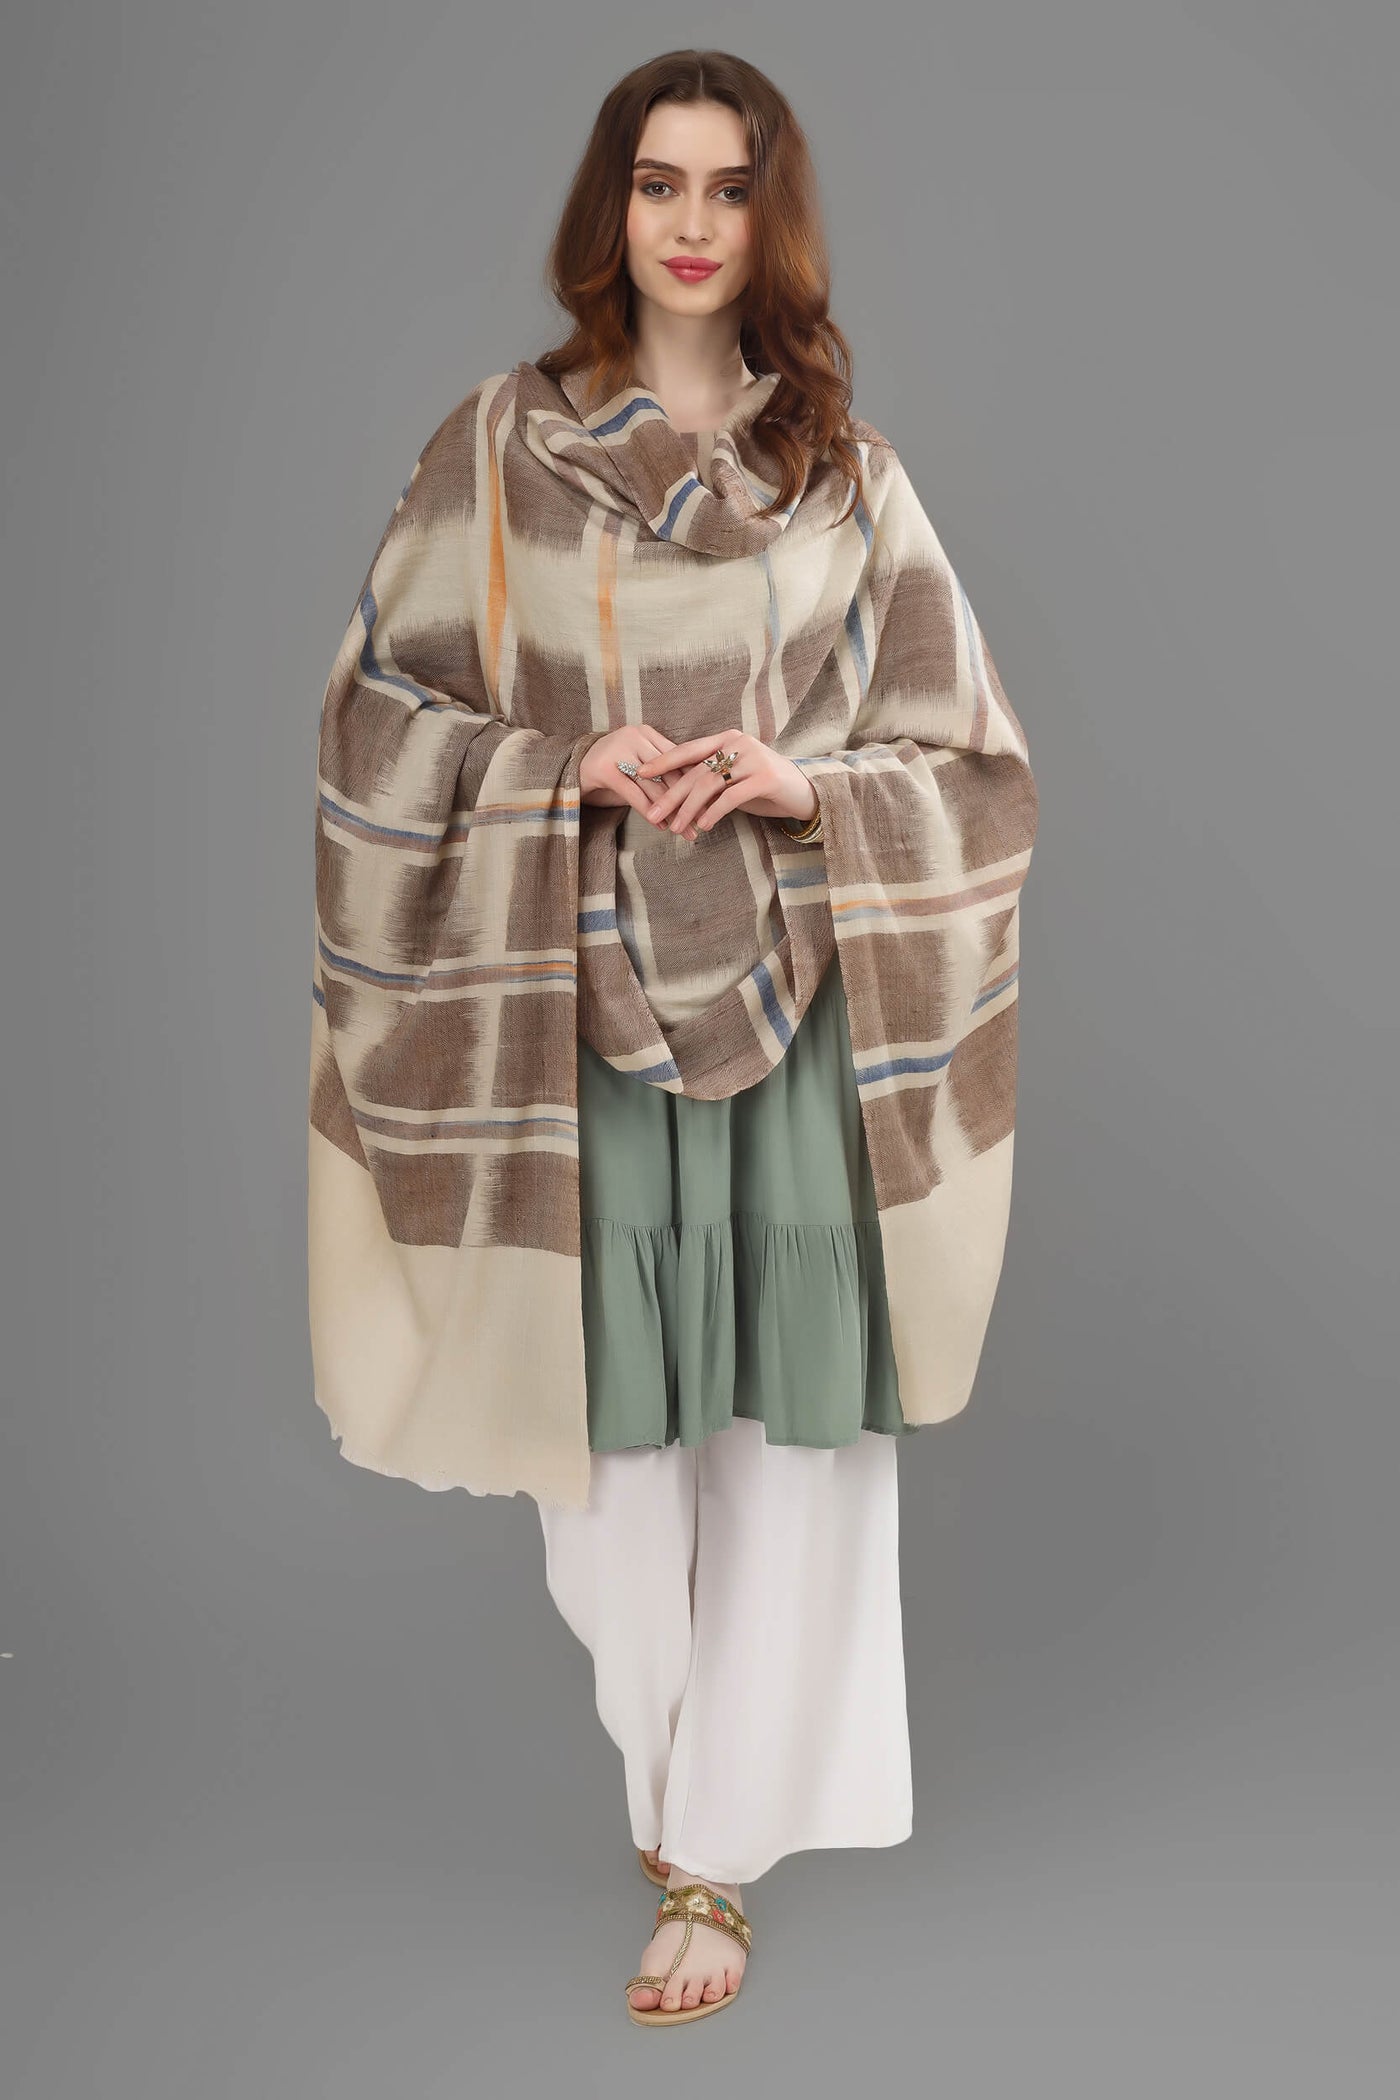 PASHMINA IN KASHMIR - Brown and off white Ikkat pashmina shawl